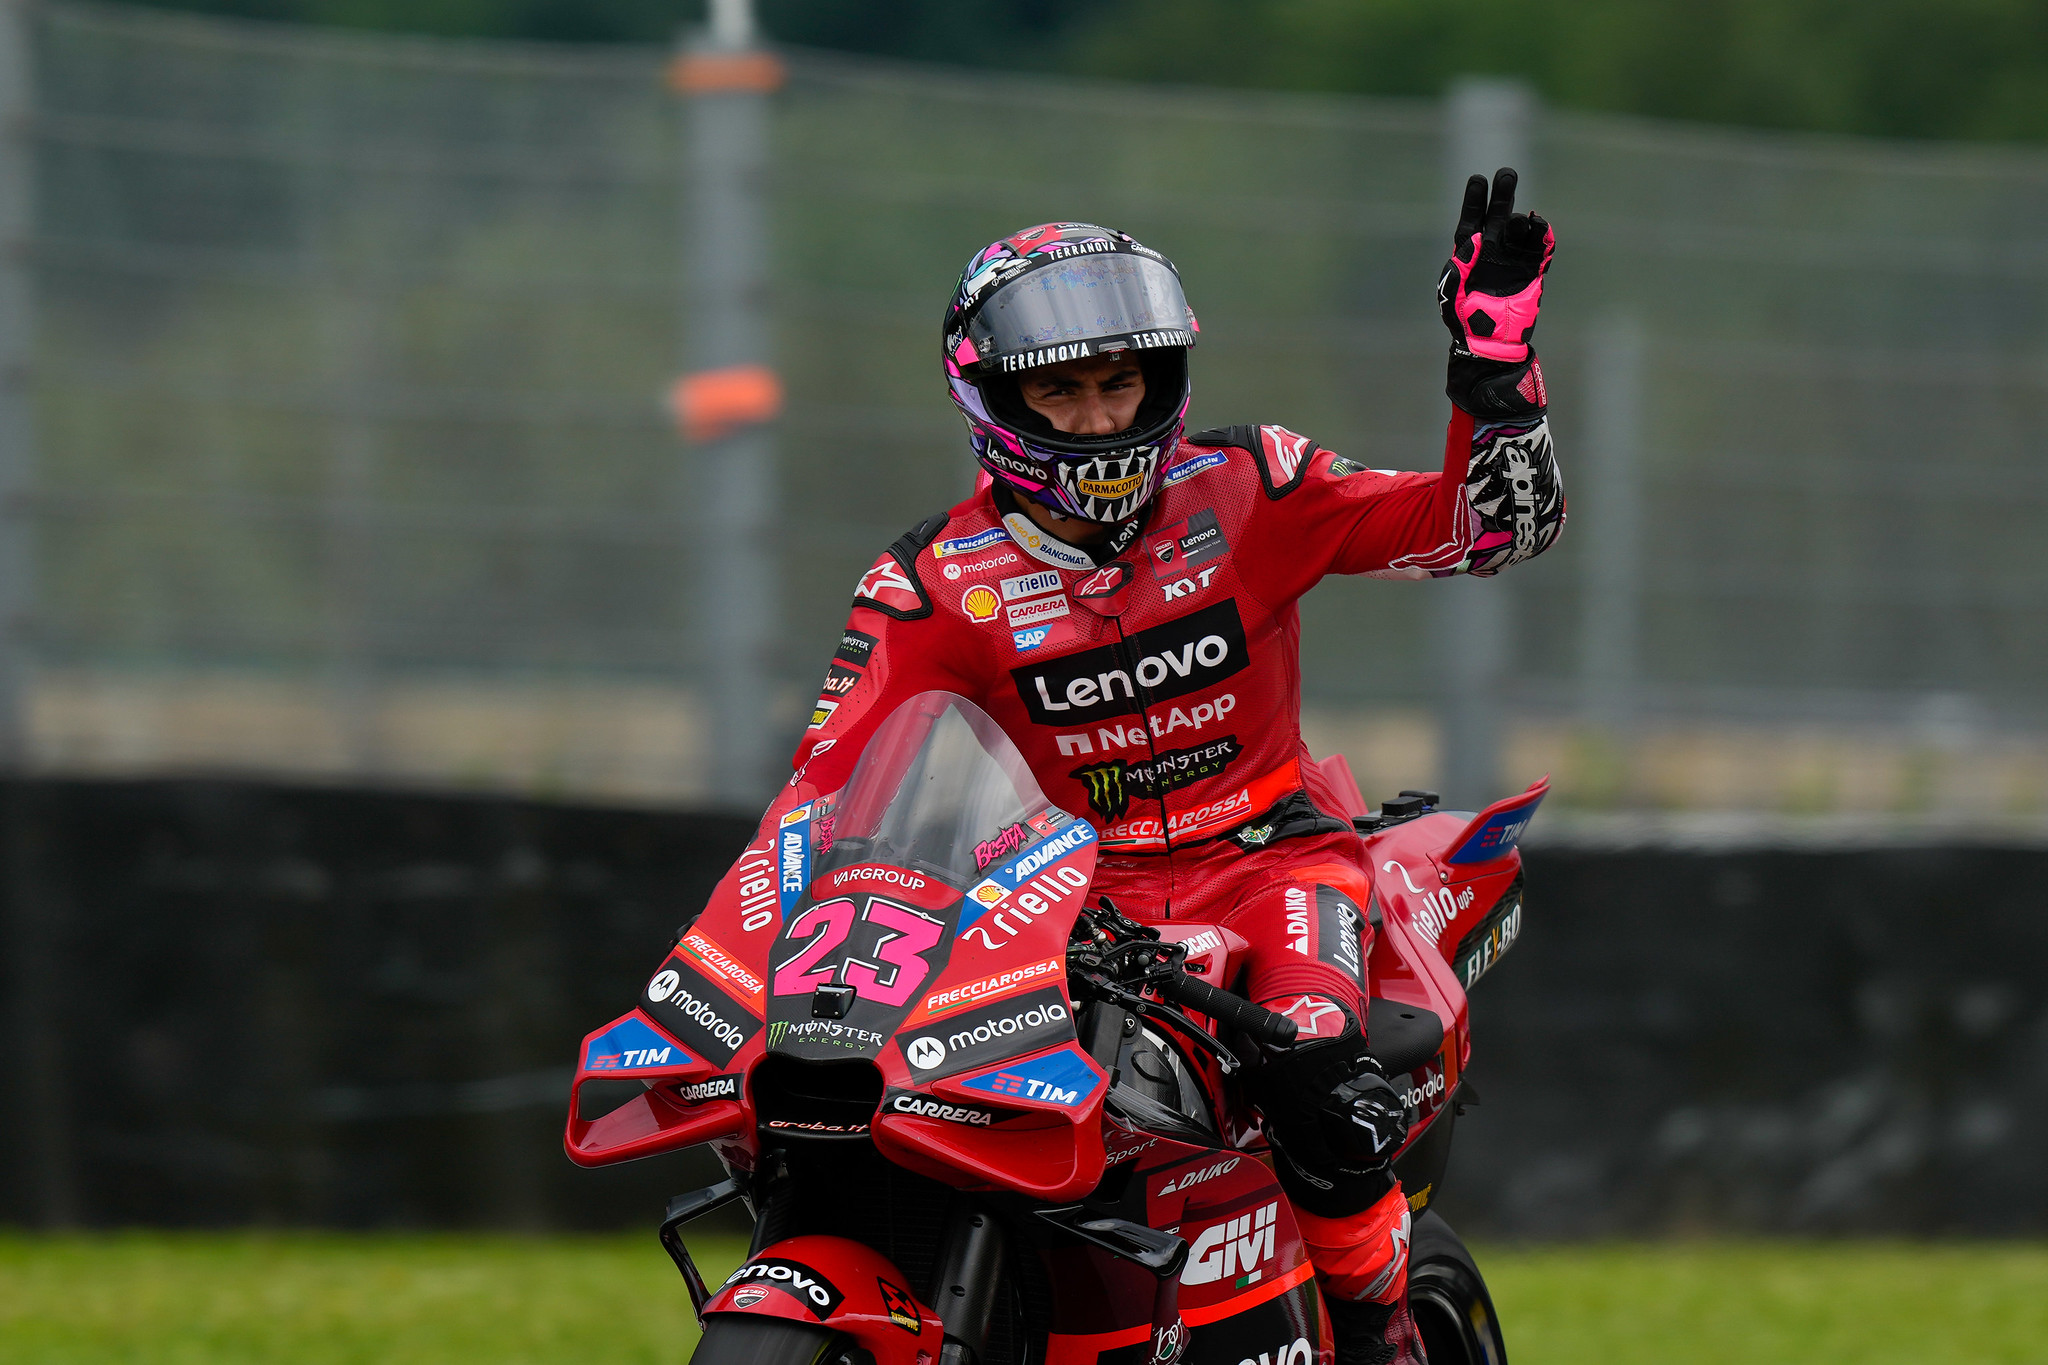 #23 Enea Bastianini - (ITA) - Ducati Lenovo Team - Ducati Desmosedici GP23